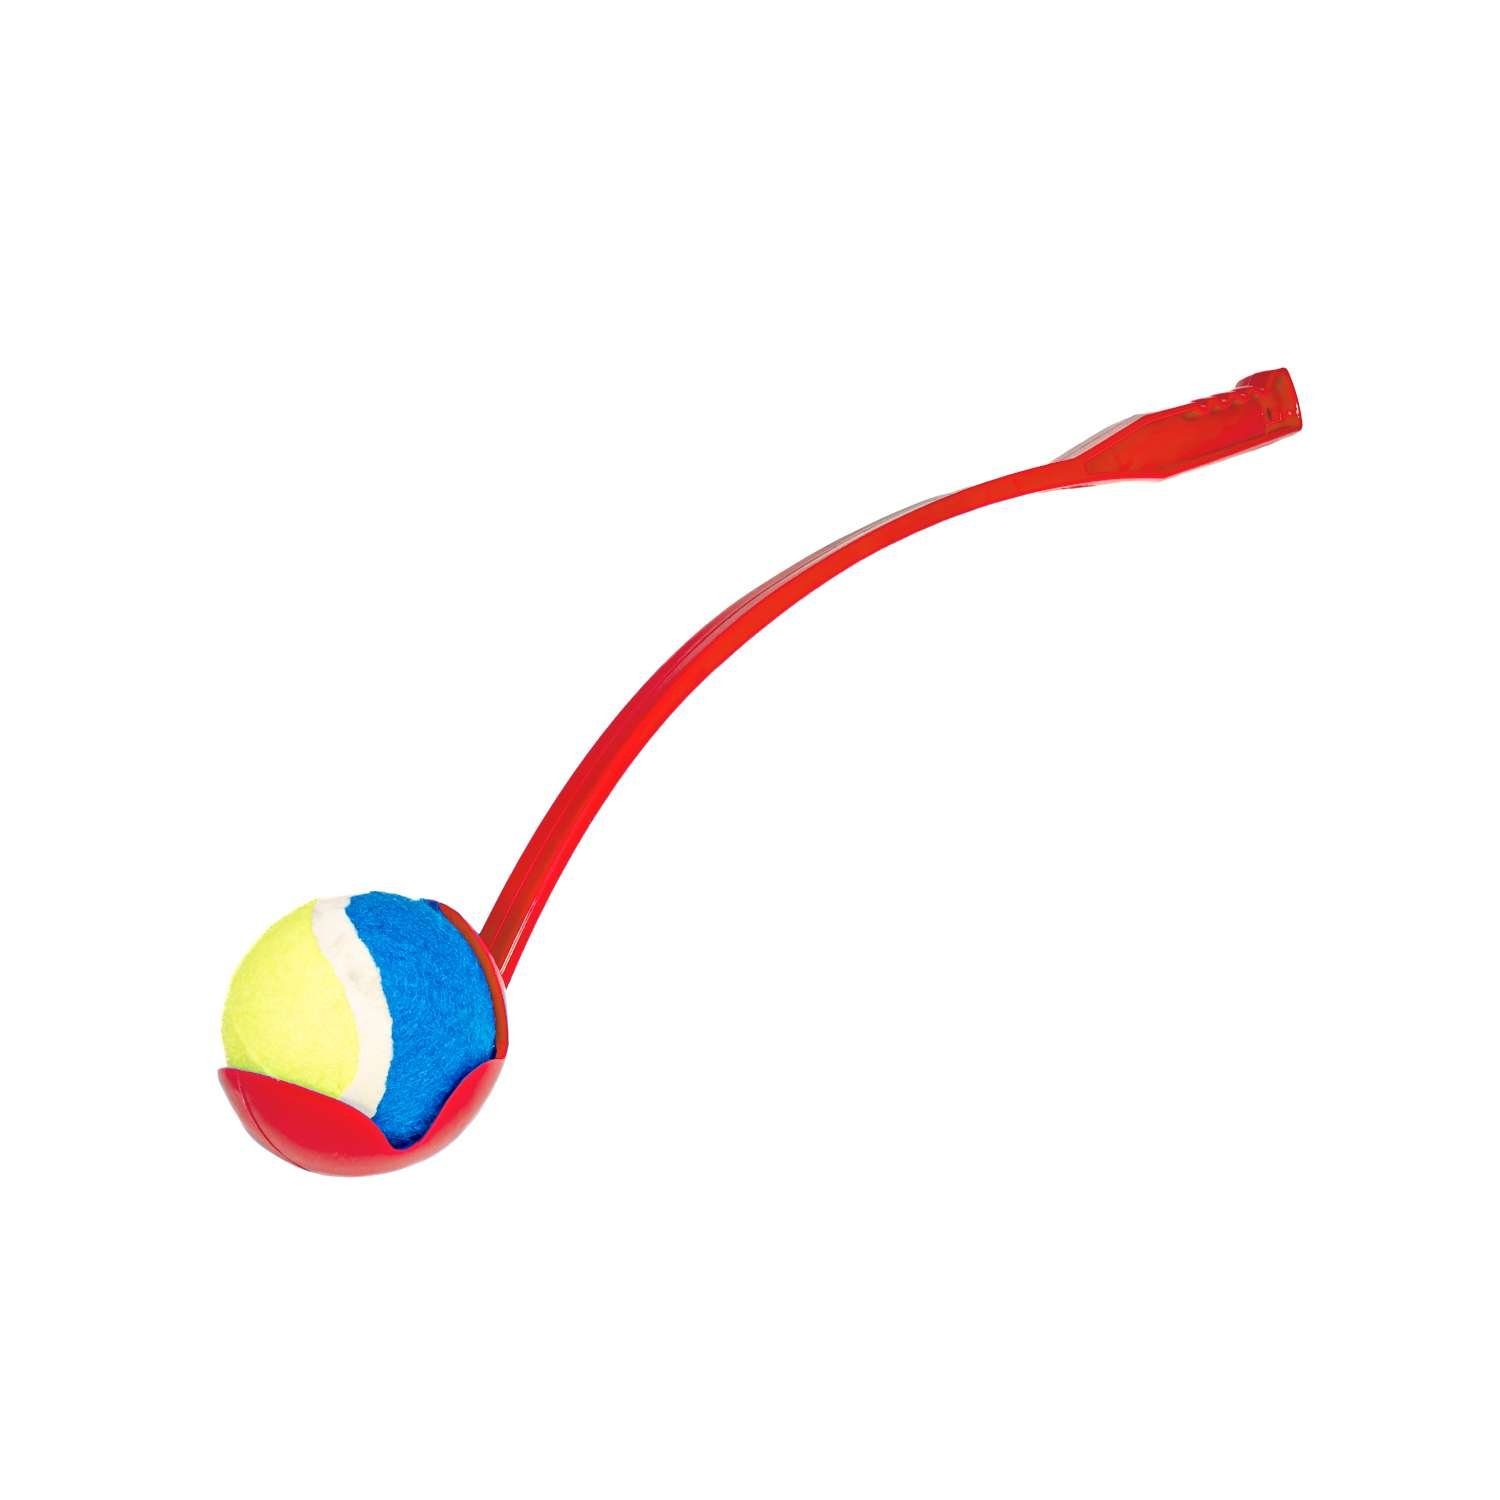 Intirilife Ballschleuder, 65 x 10 x 10 cm Größe - zum Aufheben und Werfen Rot